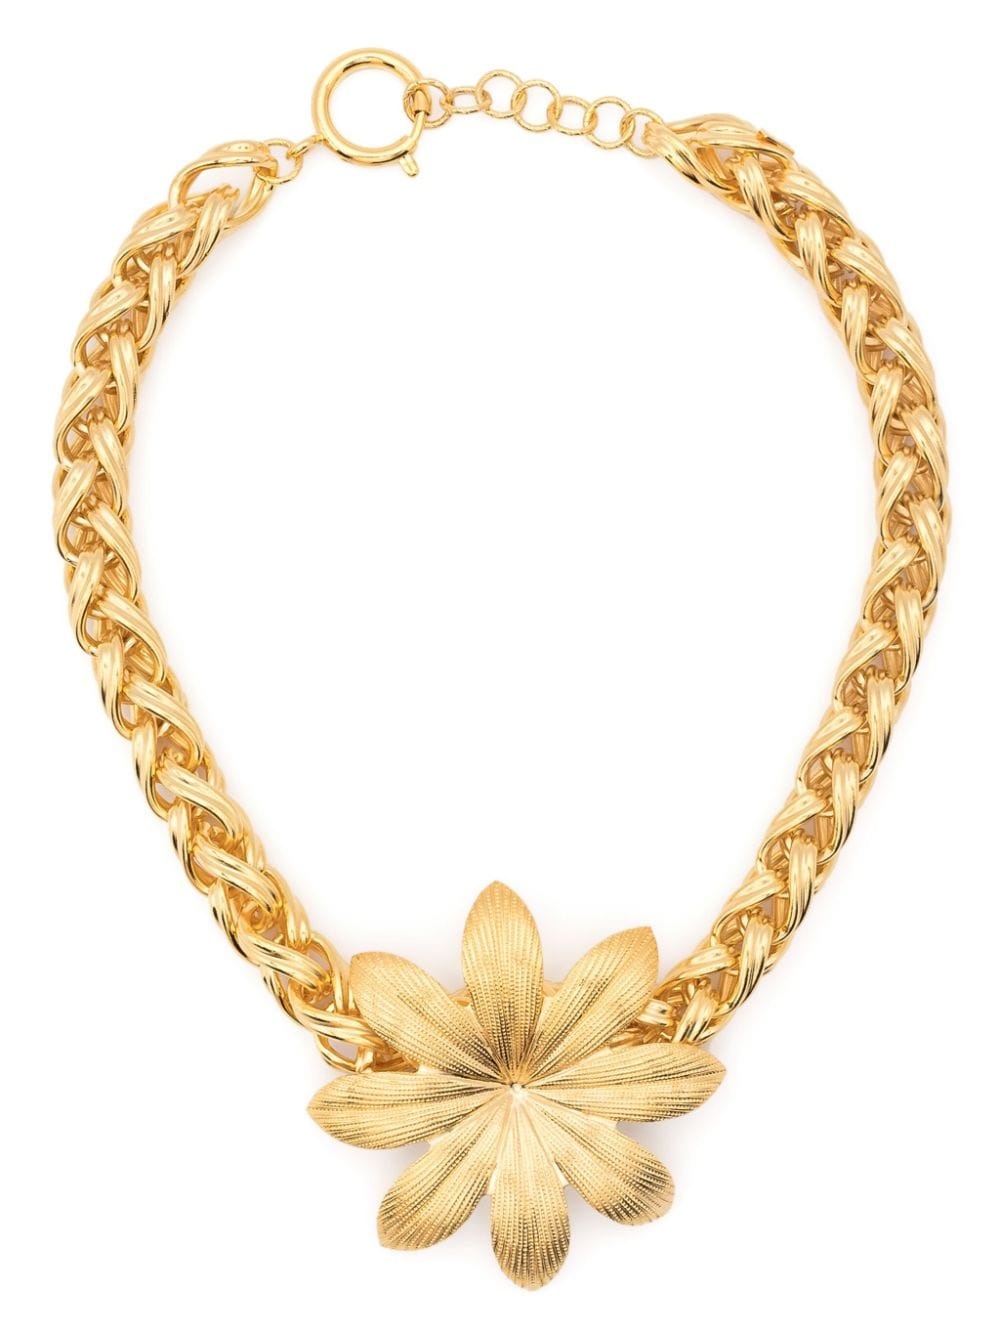 floral-appliquÃ© necklace - 1